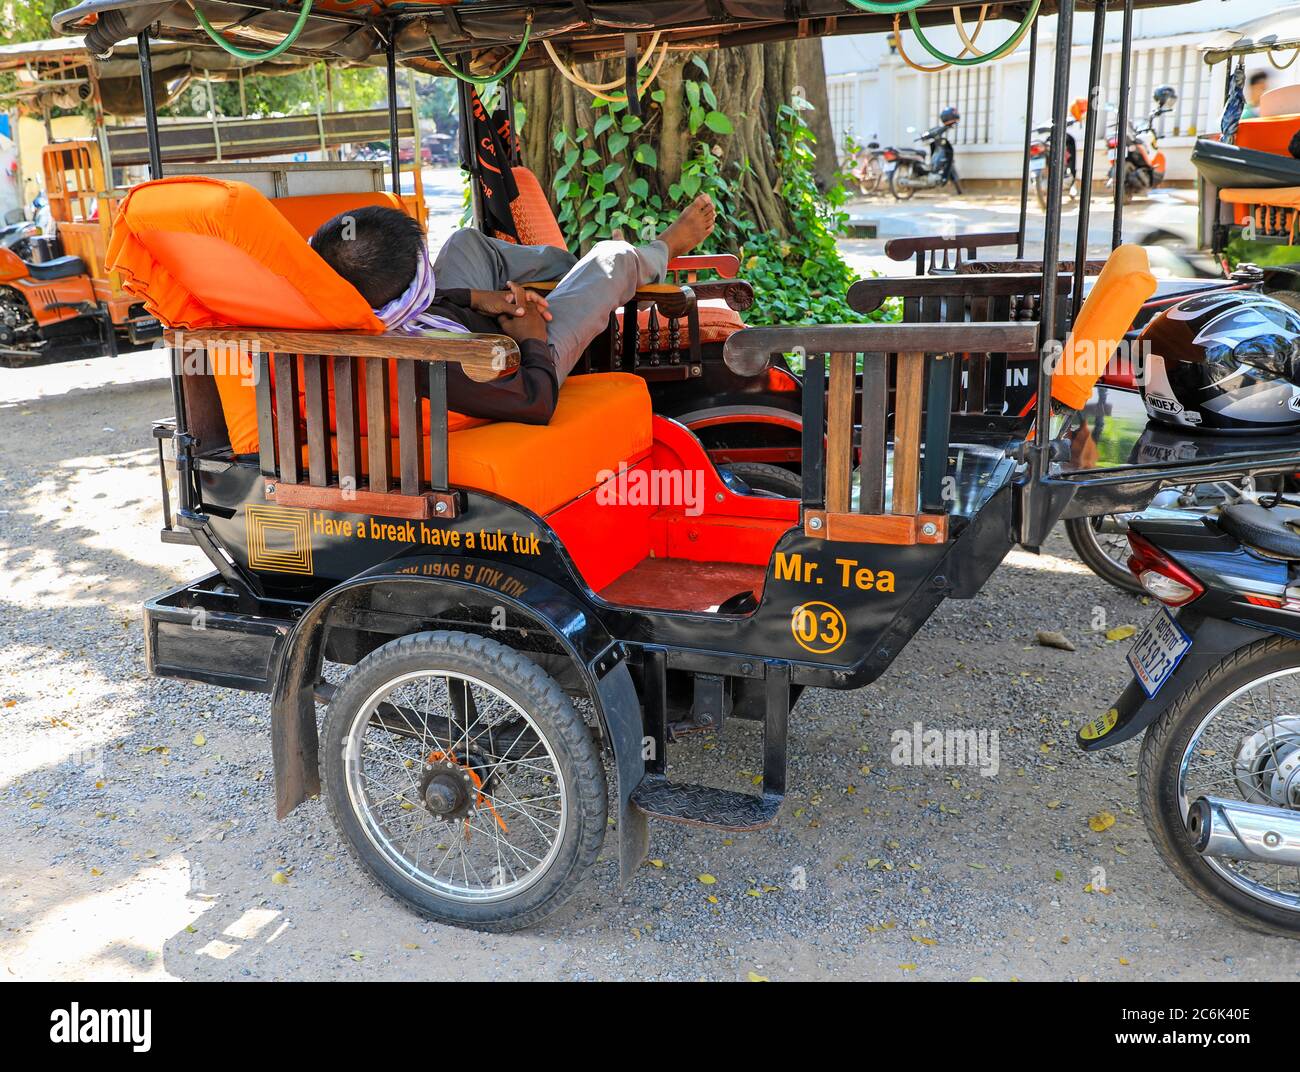 Un tuk tuk tuk moto taxi possédé par M. Tea avec le slogan «ayez une pause, ayez un tuk tuk» écrit sur le côté, Siem Reap, Cambodge, Asie du Sud-est Banque D'Images